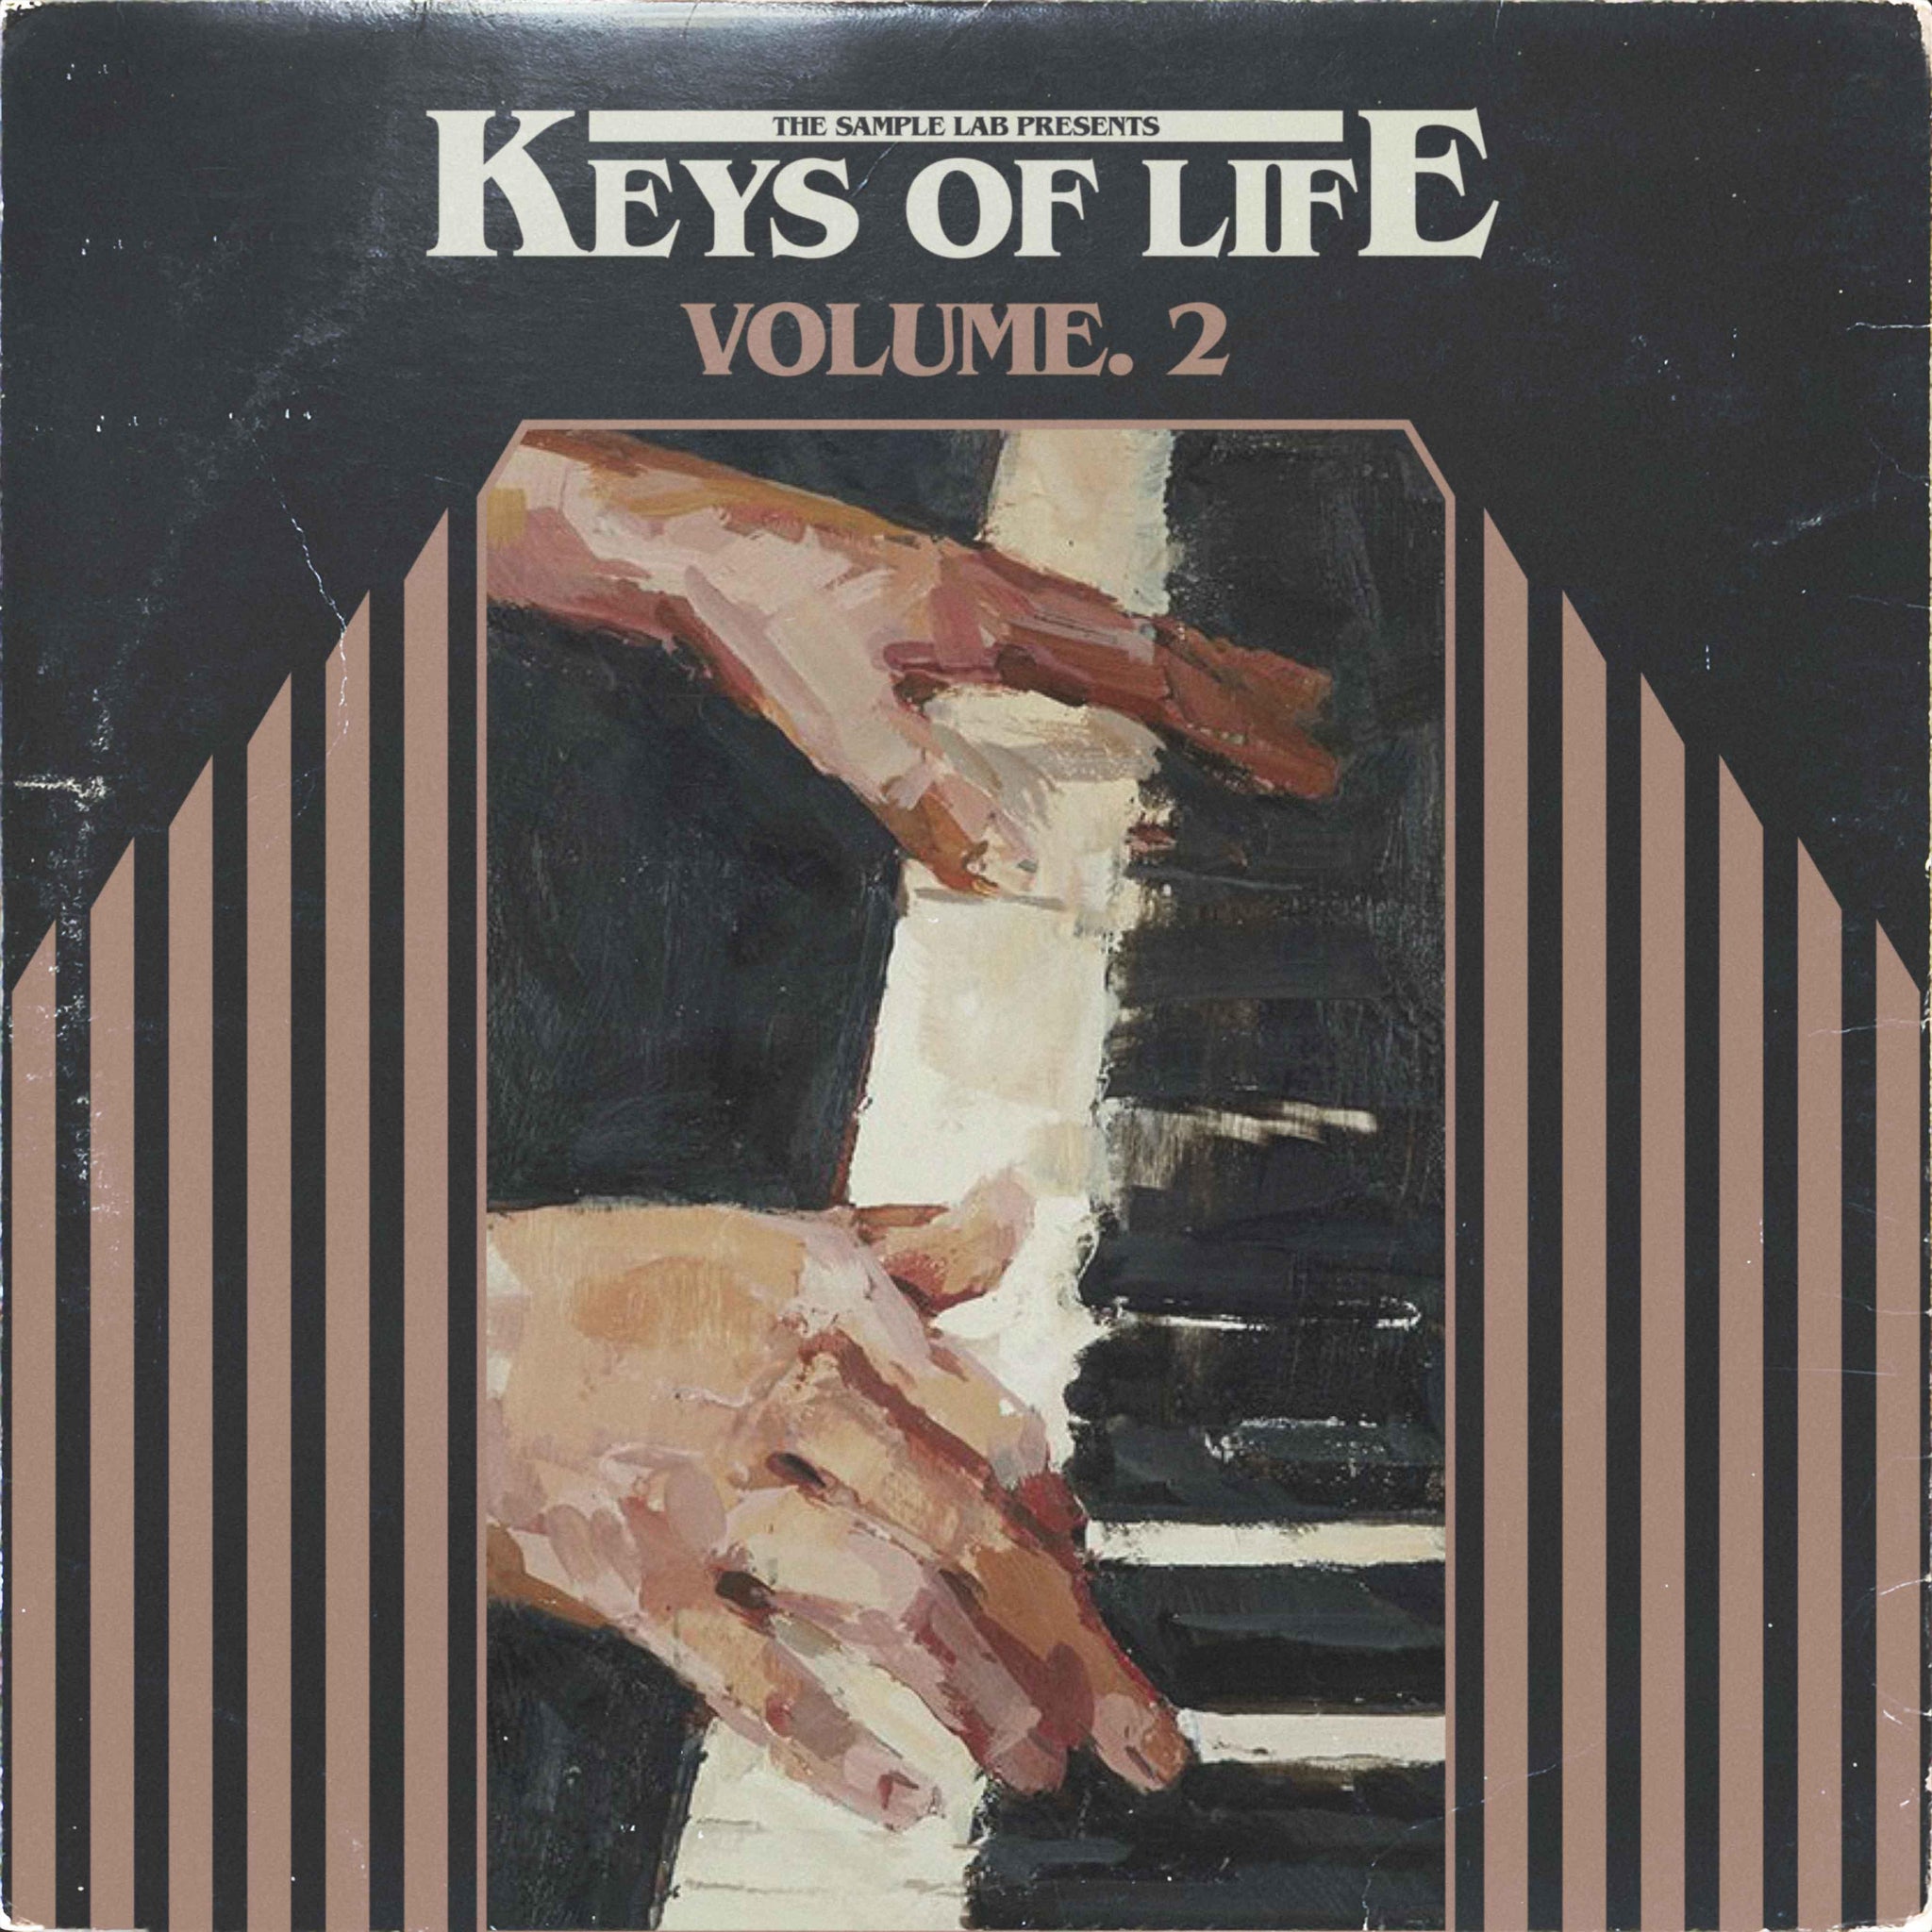 Keys Of Life Volume 2 - The Sample Lab